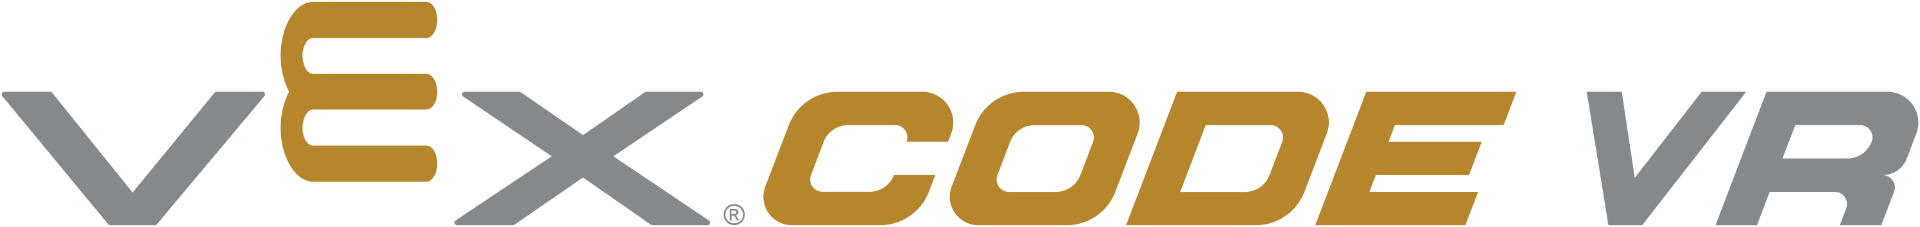 VEXcode VR logo